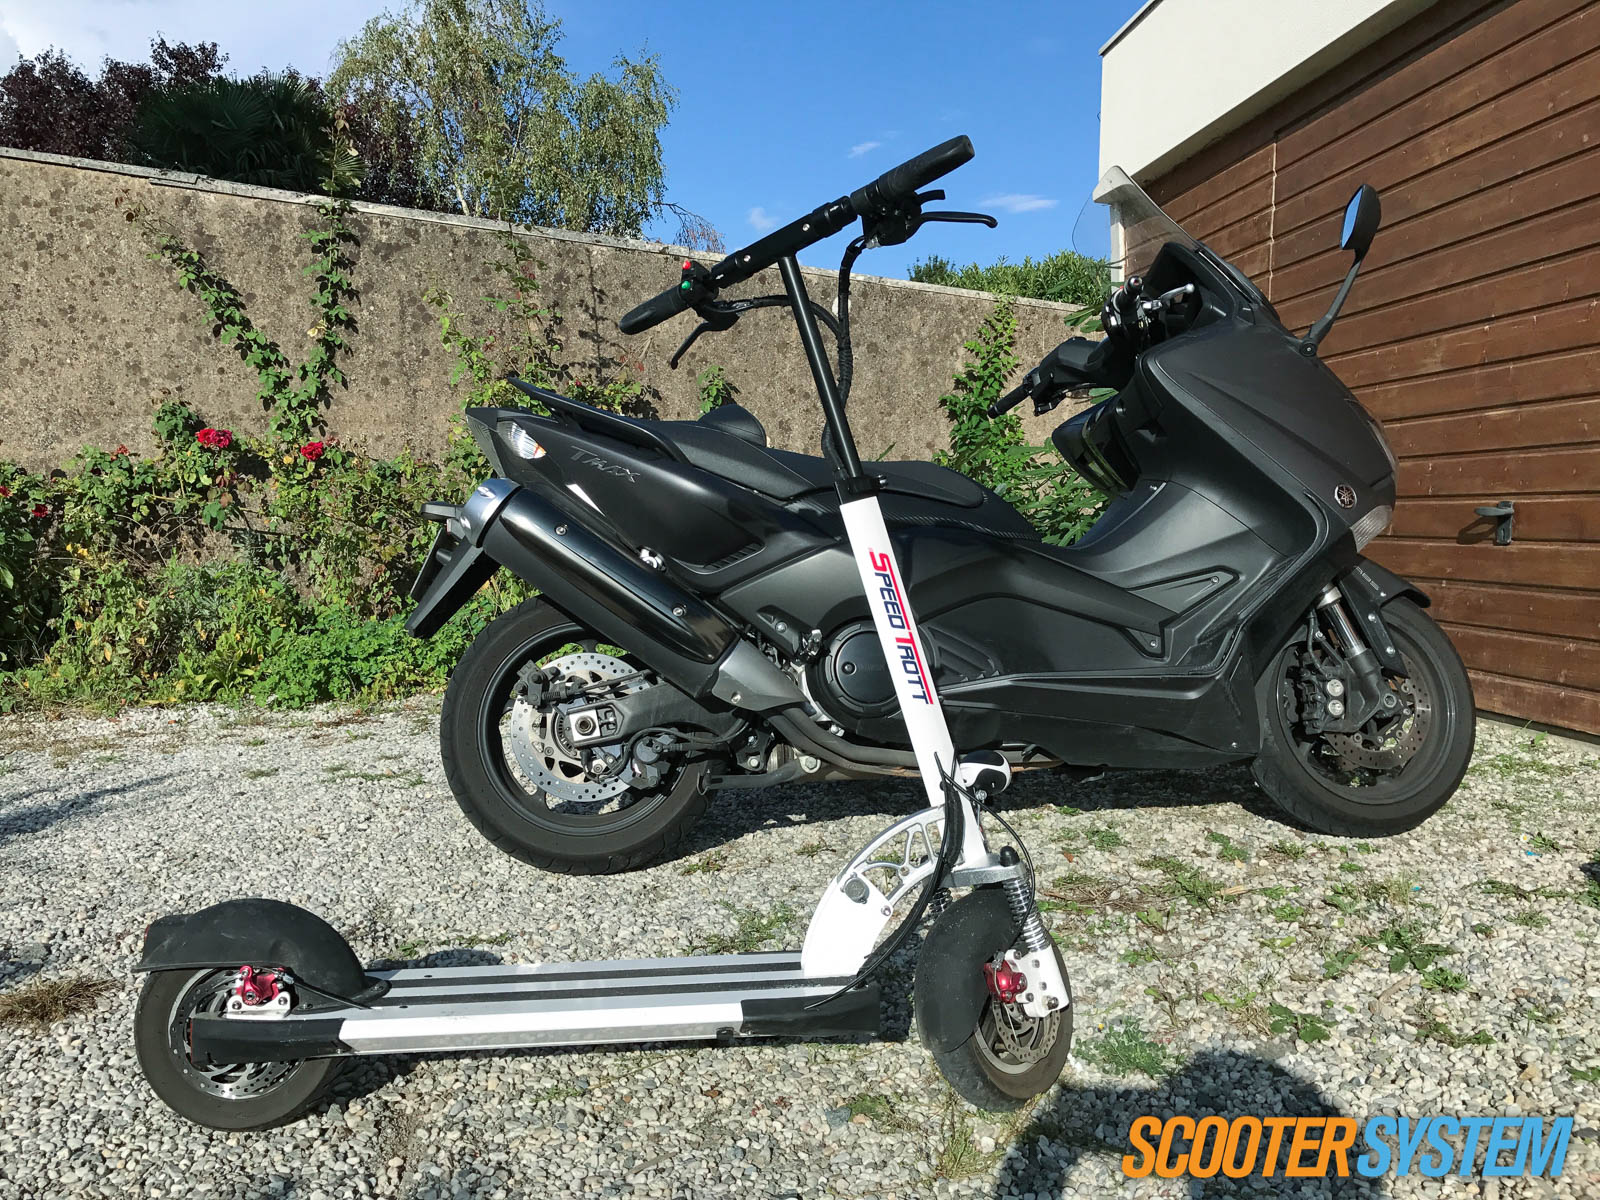 À défaut d'essai scooter, nous avons testé pour vous la trottinette Speedtrott ST16